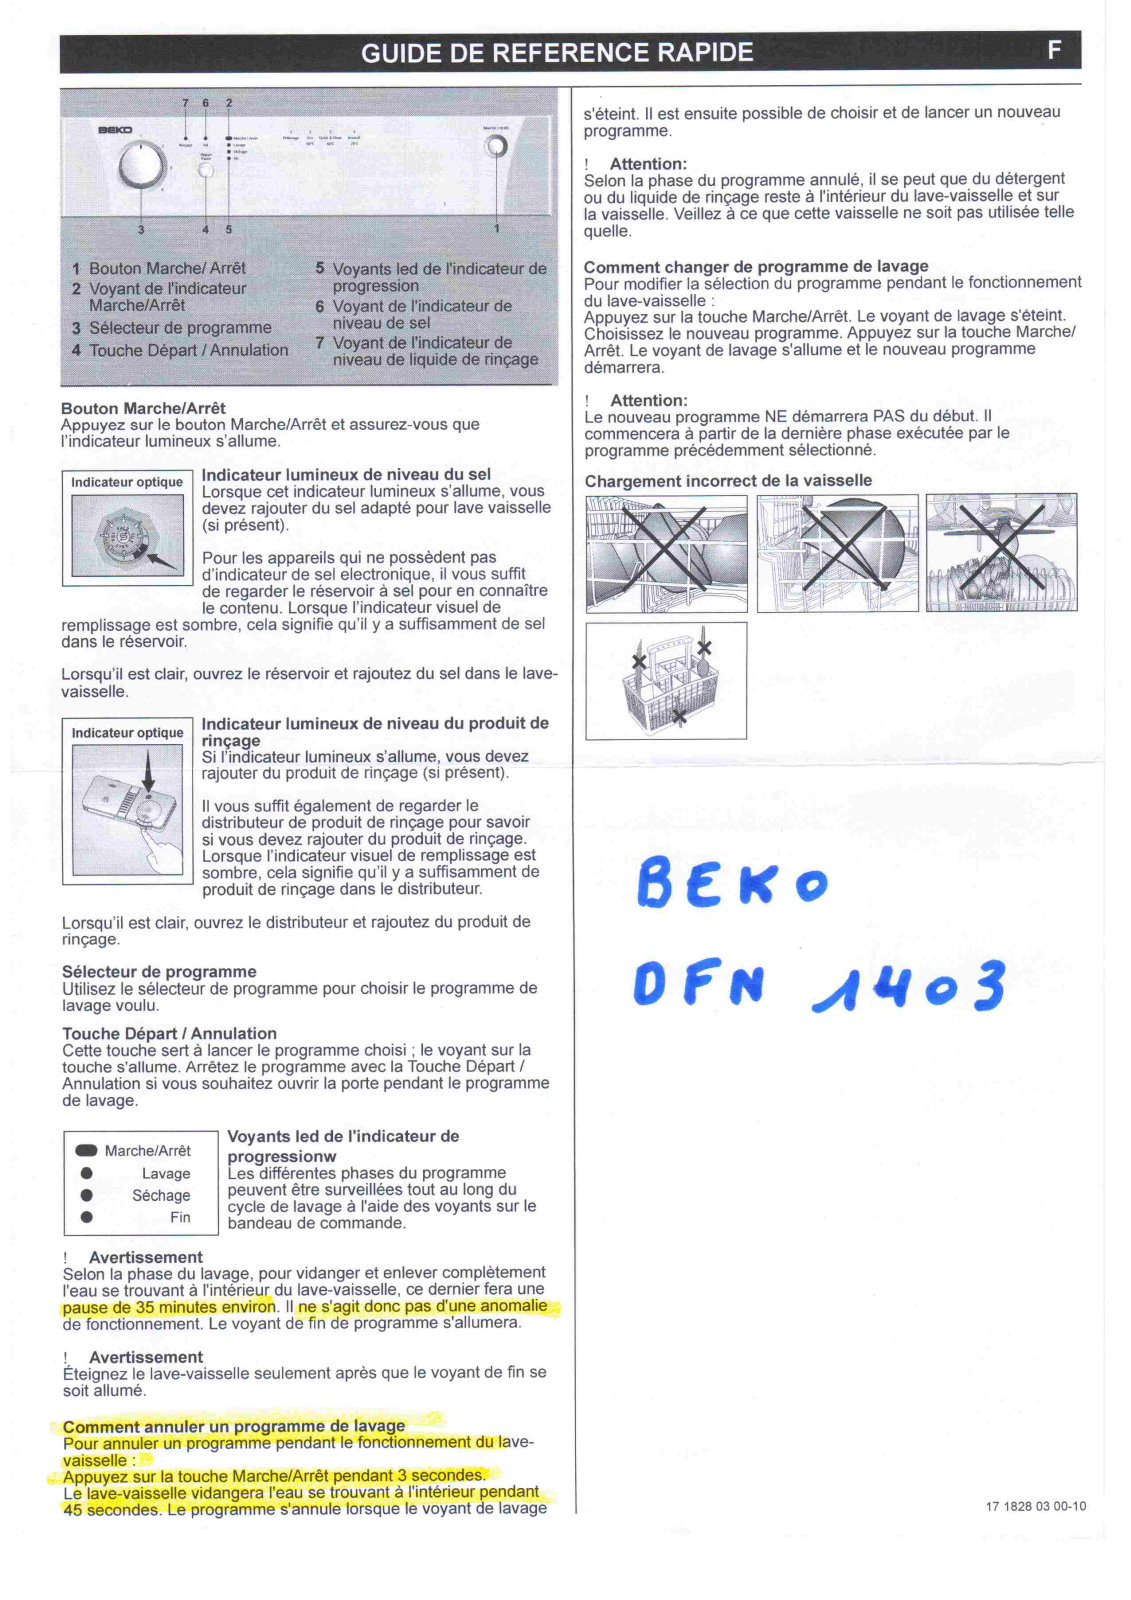 BEKO DFN 1403 User Manual